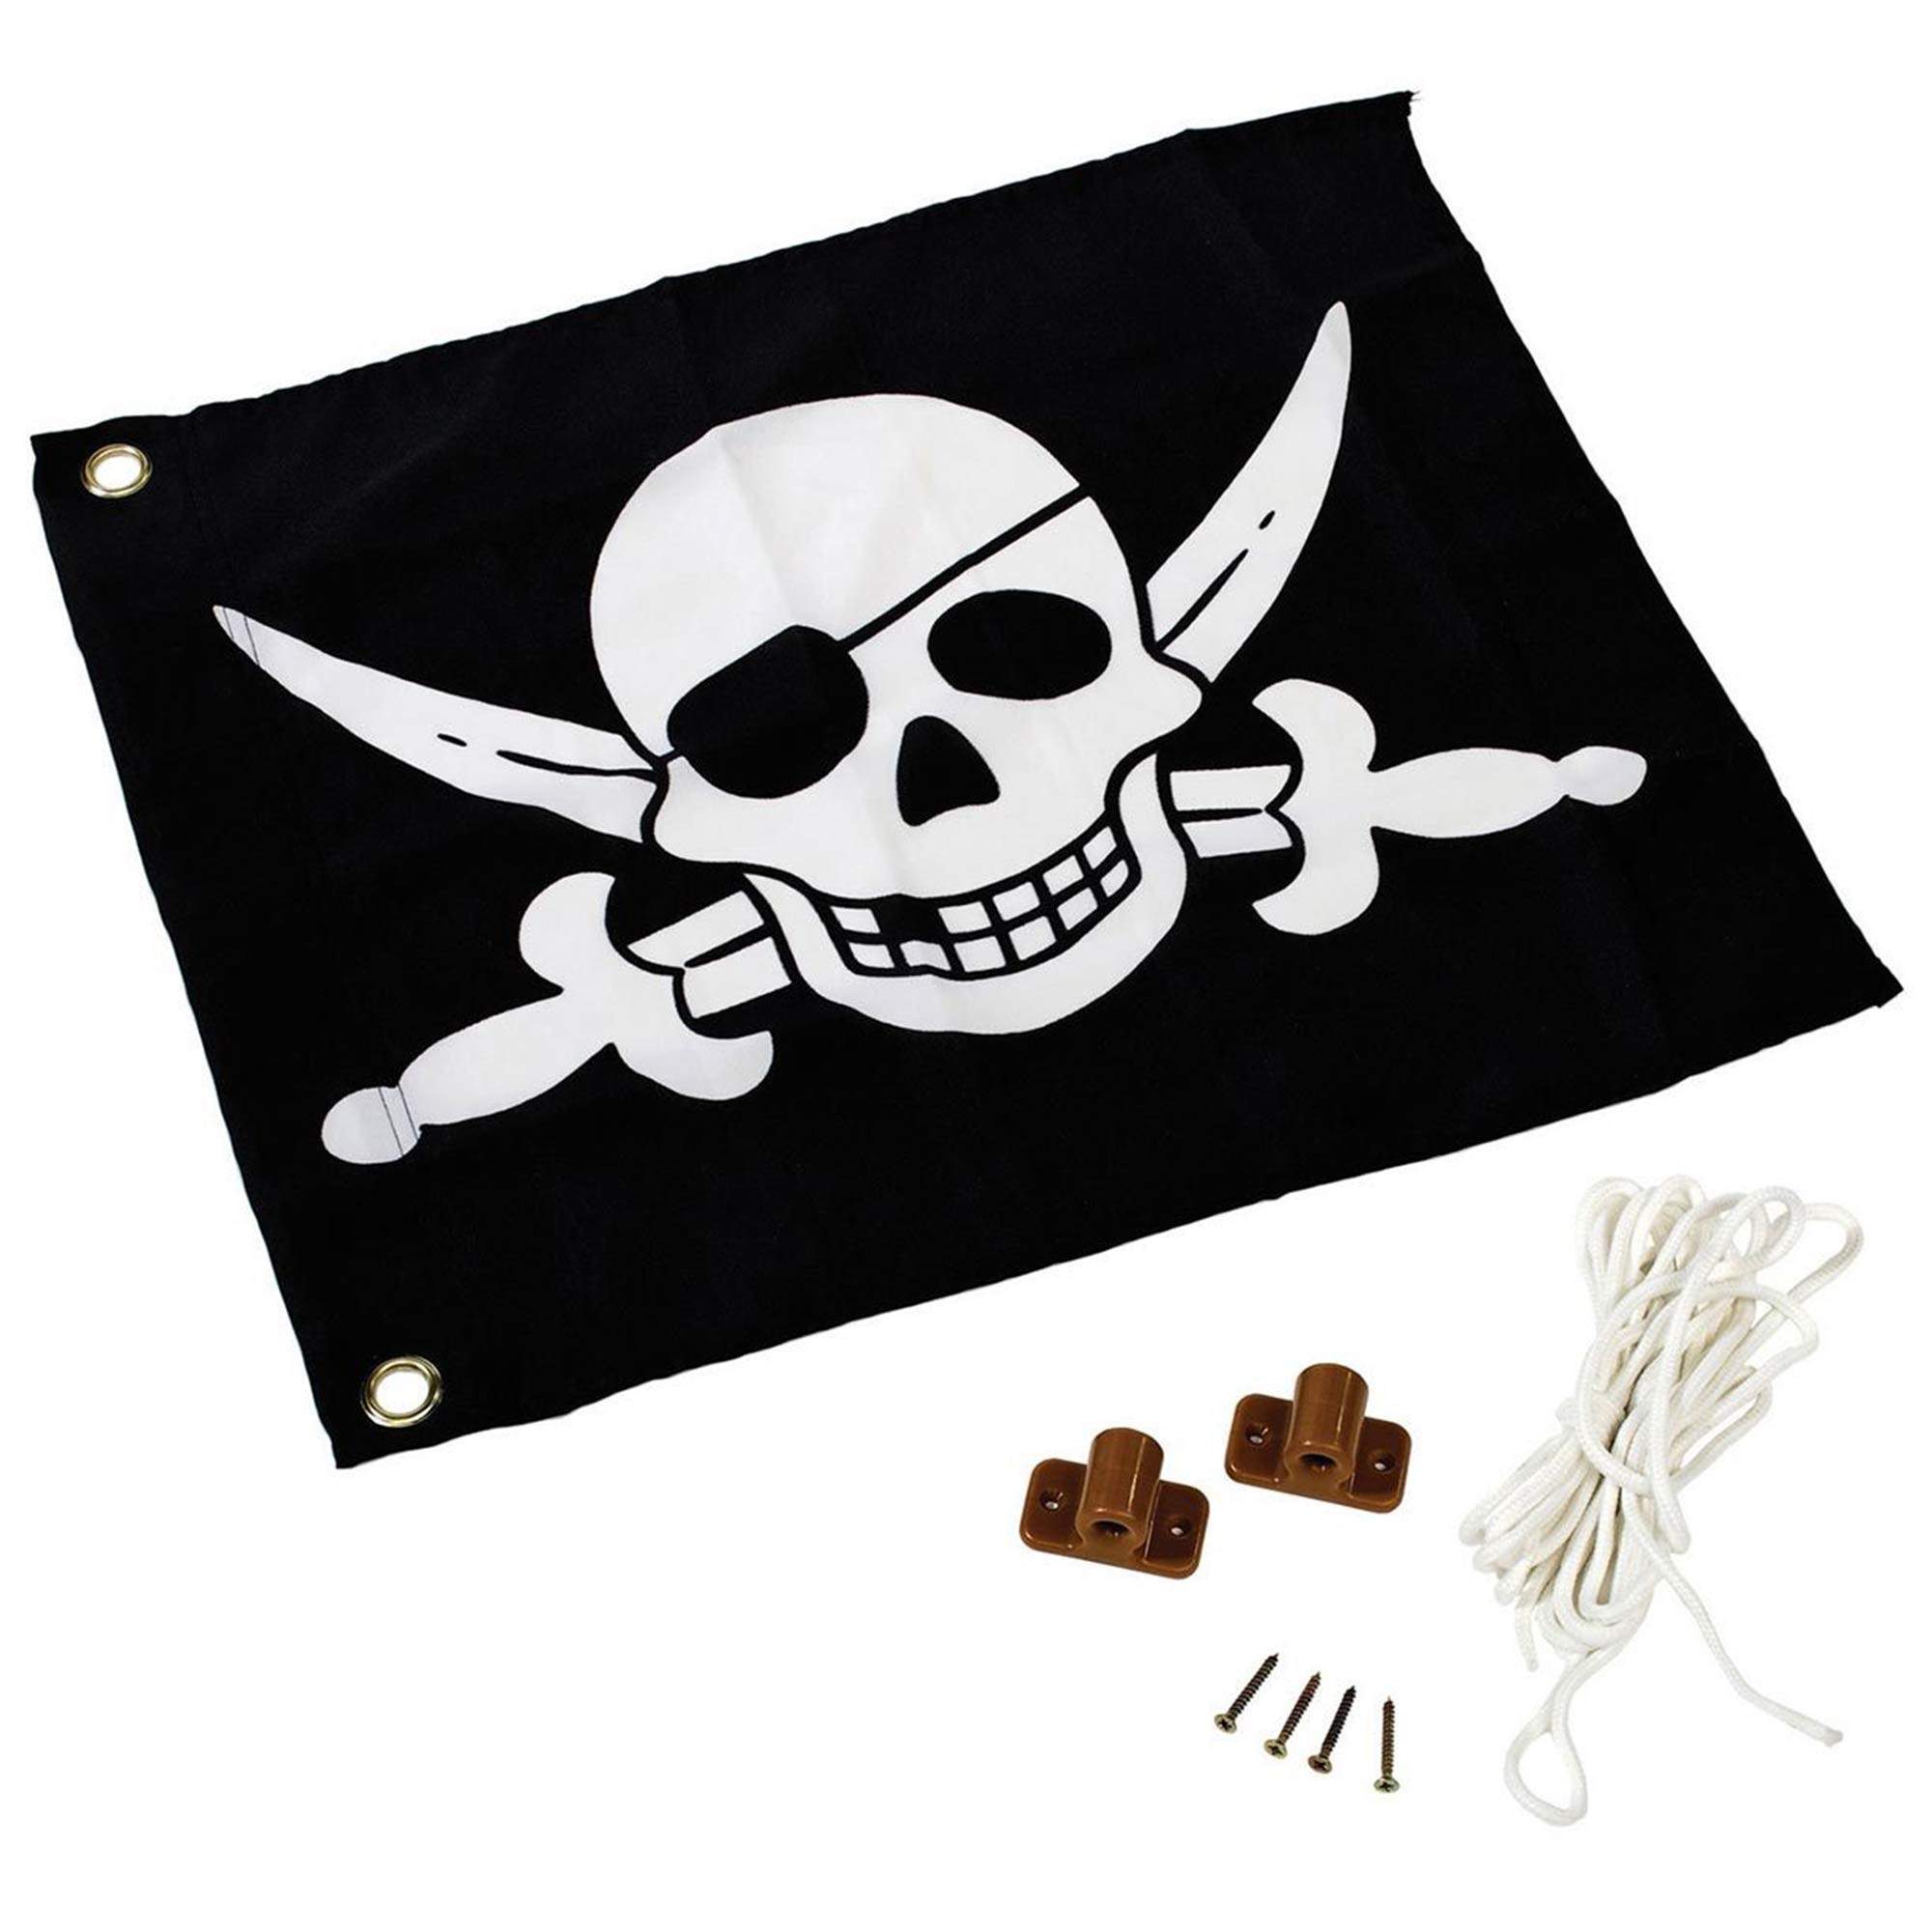 Le drapeau pirate ludique pour les enfants comme pour les plus grands